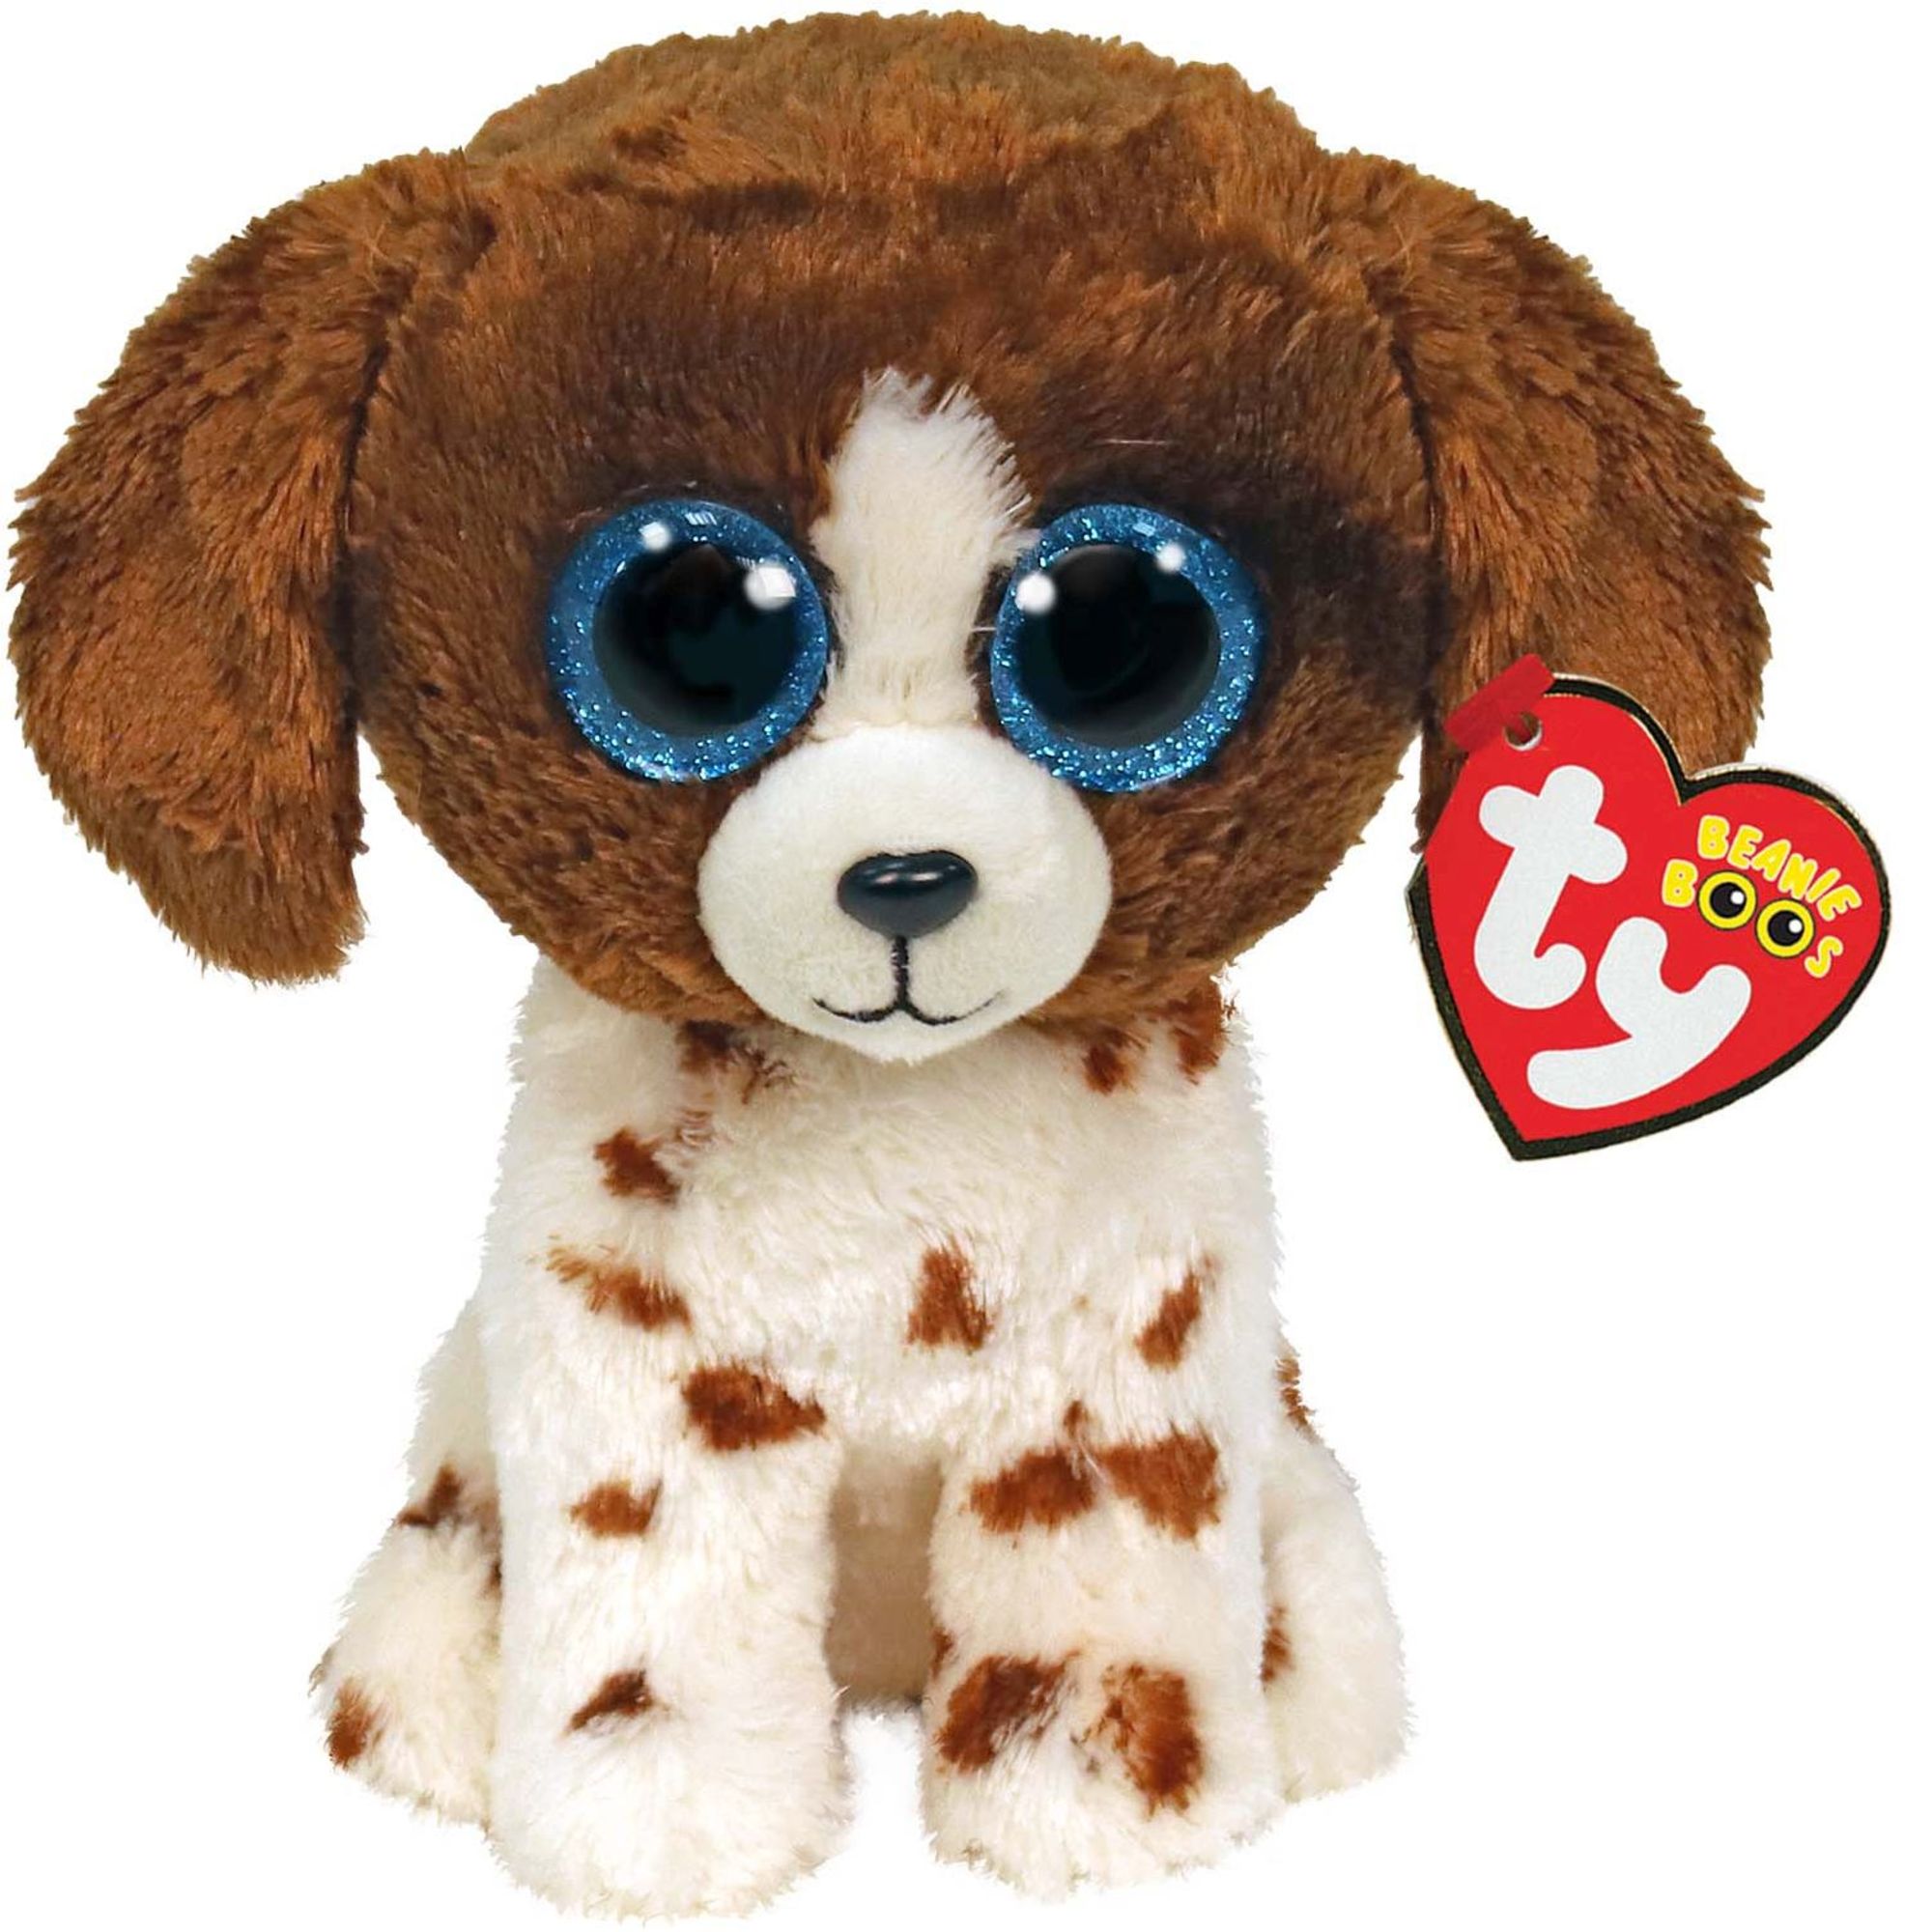 TY Beanie Boo Boos - Plush Soft Toy - Random 5 Pack